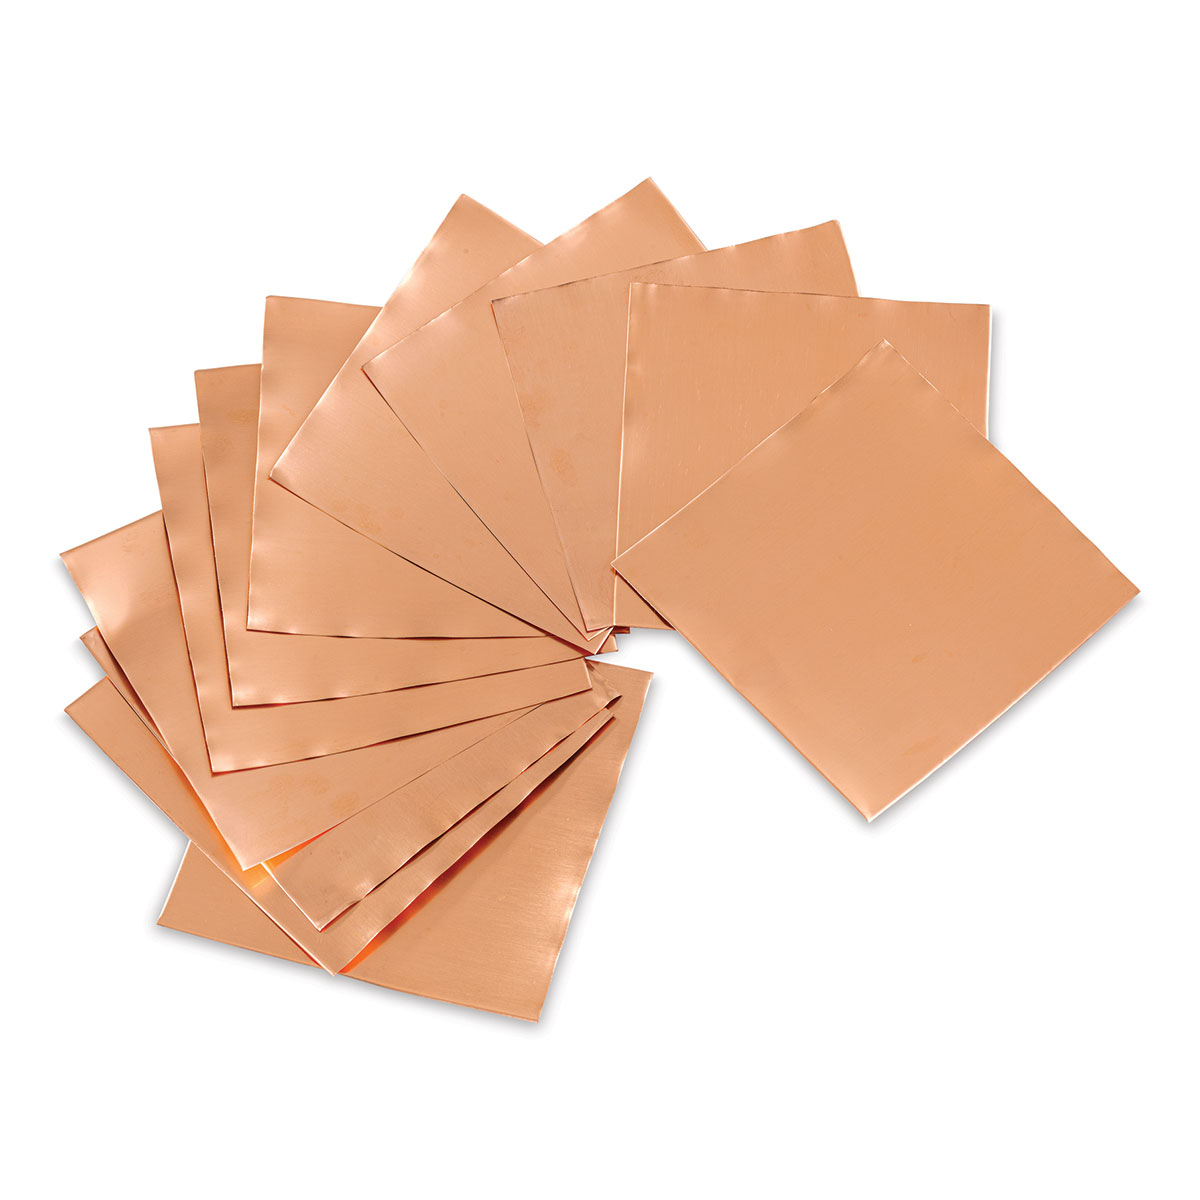 Copper Sheets - All Foils